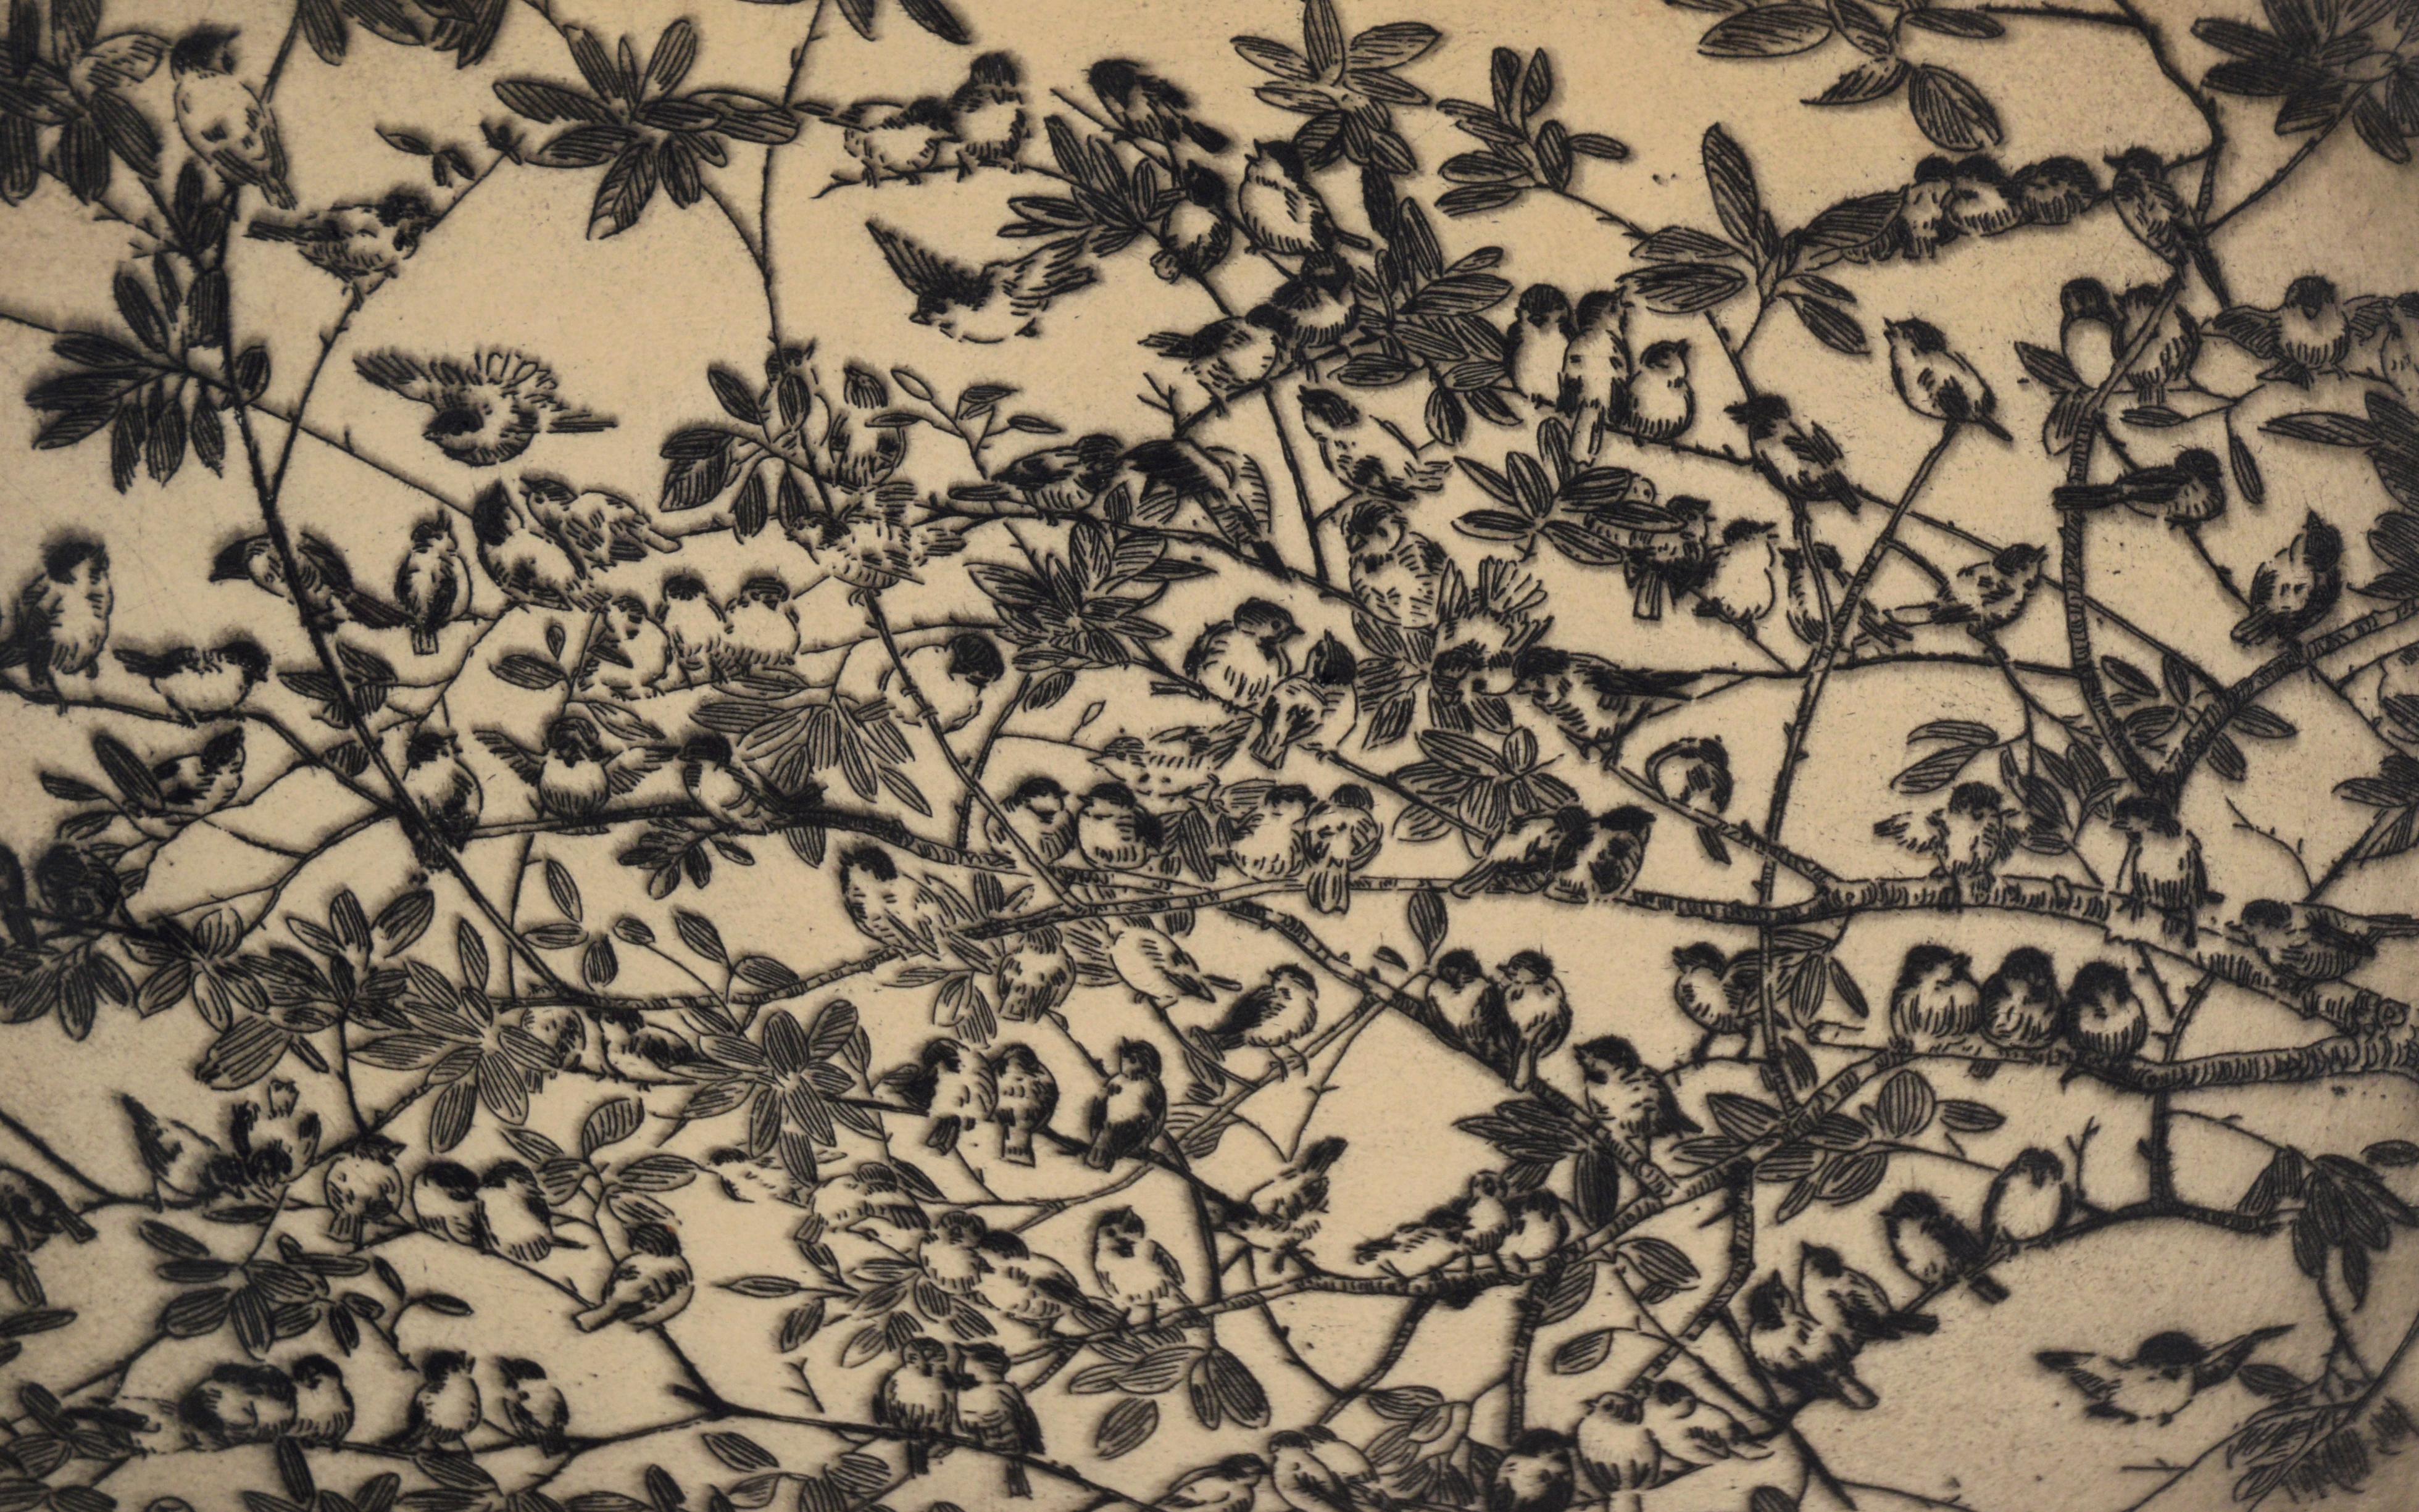 Vogel auf Zweigen – Lithographie in Tinte auf Papier – Auflage von 75 Stück

Zarte und detaillierte Vogellithografie von Fugi Nakamizo (Japaner/Amerikaner, 1889-1950). Kleine Vögel sitzen auf Zweigen, die von Blättern umgeben sind. Die Vögel haben